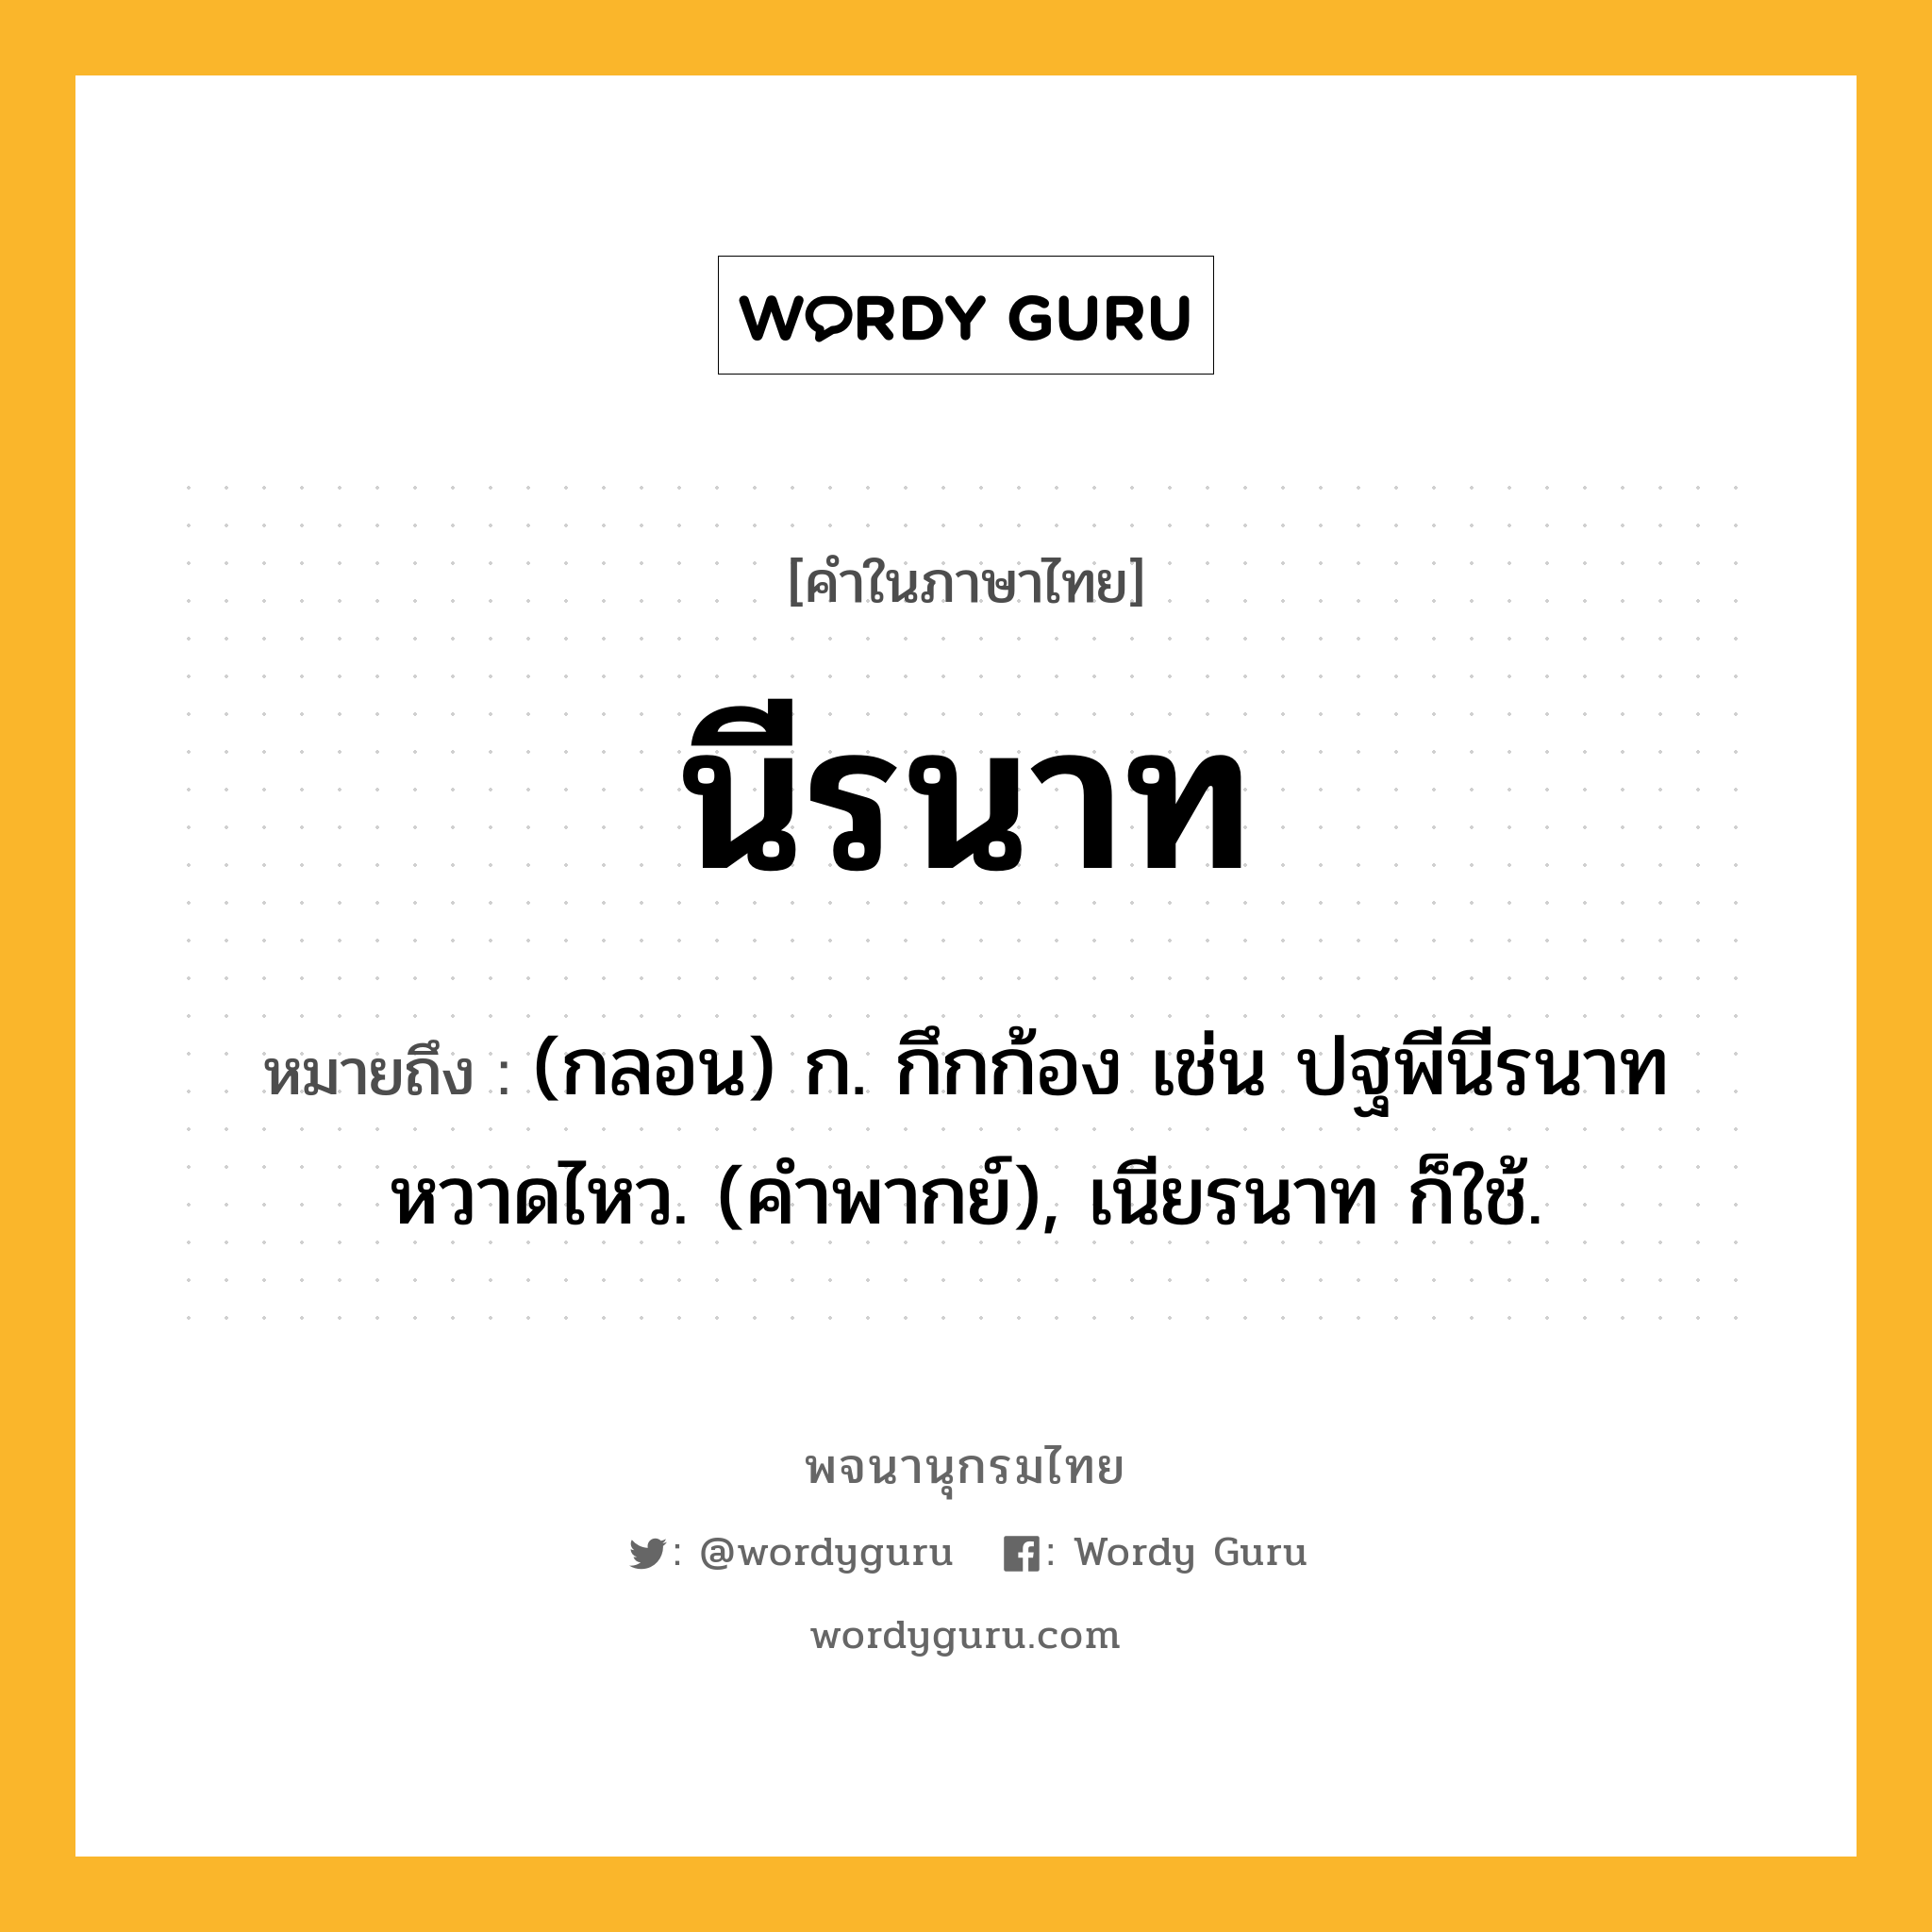 นีรนาท ความหมาย หมายถึงอะไร?, คำในภาษาไทย นีรนาท หมายถึง (กลอน) ก. กึกก้อง เช่น ปฐพีนีรนาทหวาดไหว. (คําพากย์), เนียรนาท ก็ใช้.